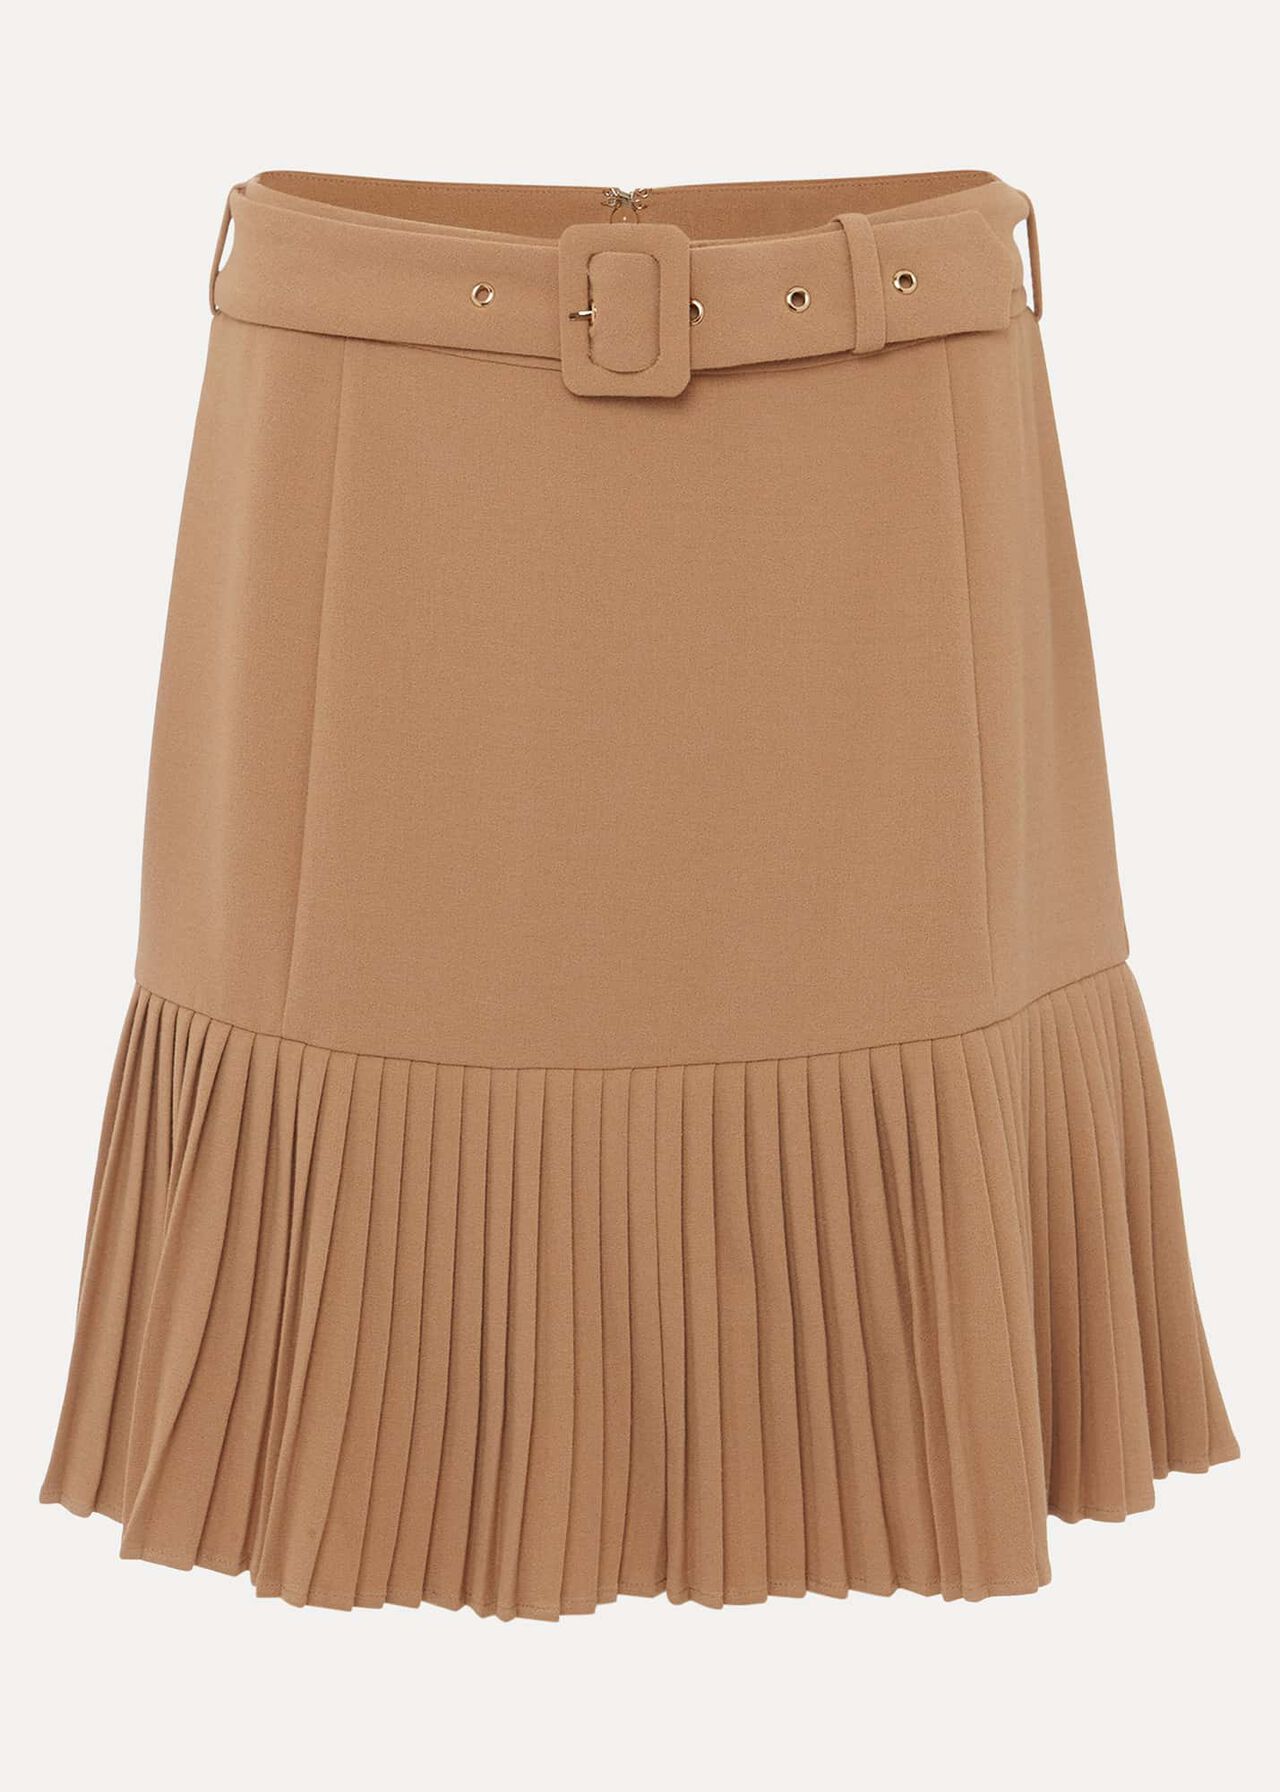 Annabel Pleated Mini Skirt